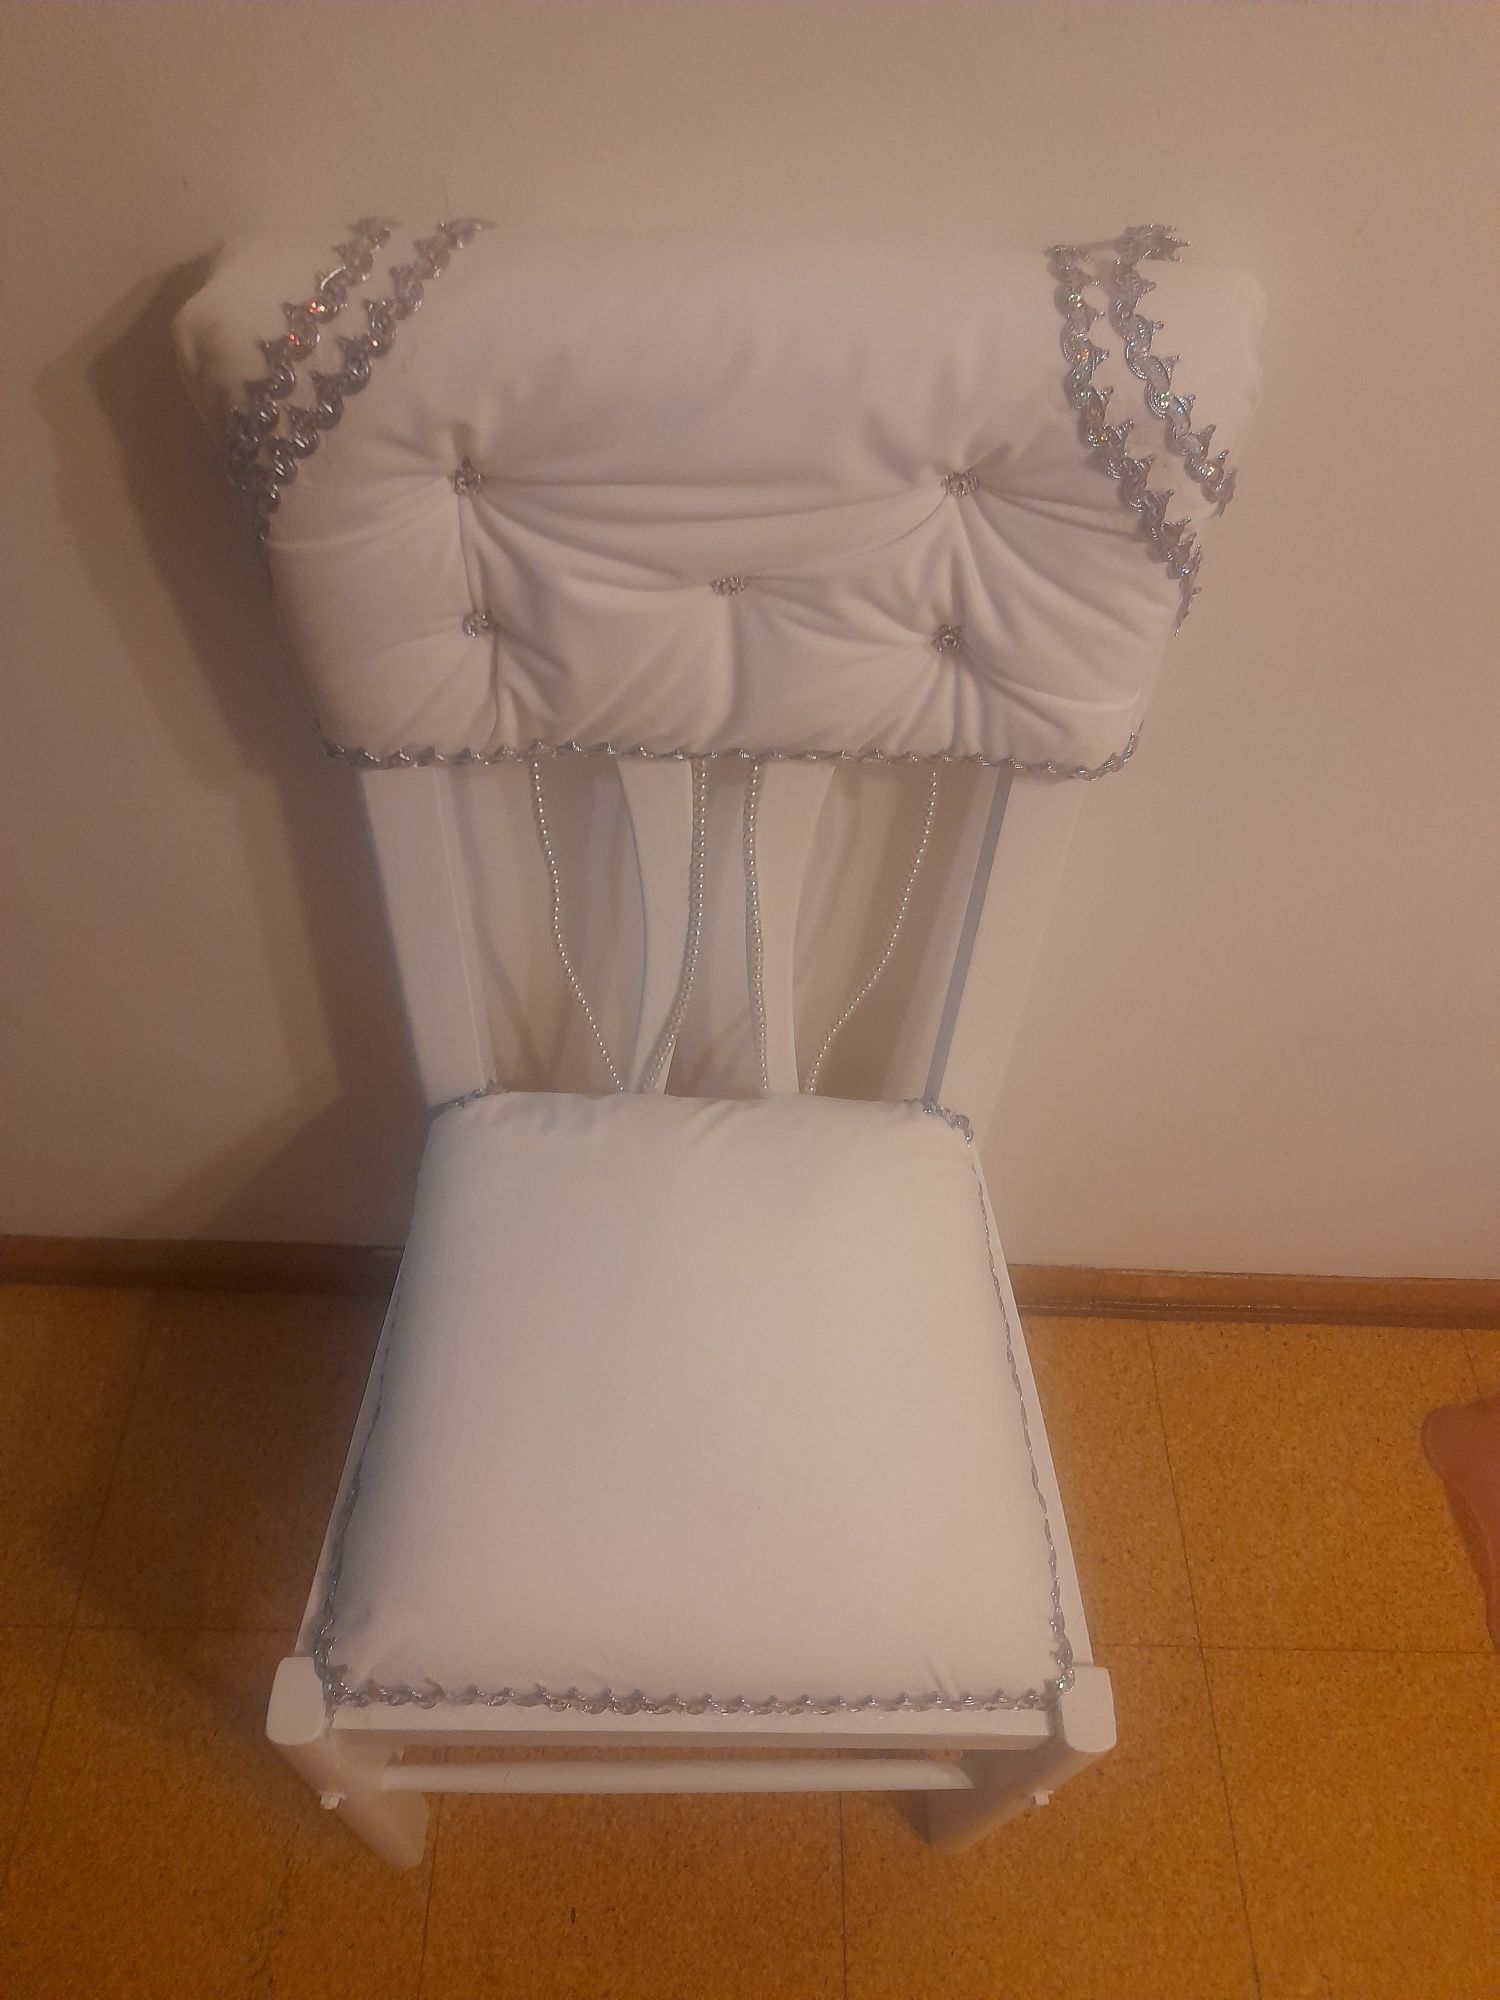 Restauro de cadeiras e sofas em artigos de luxo